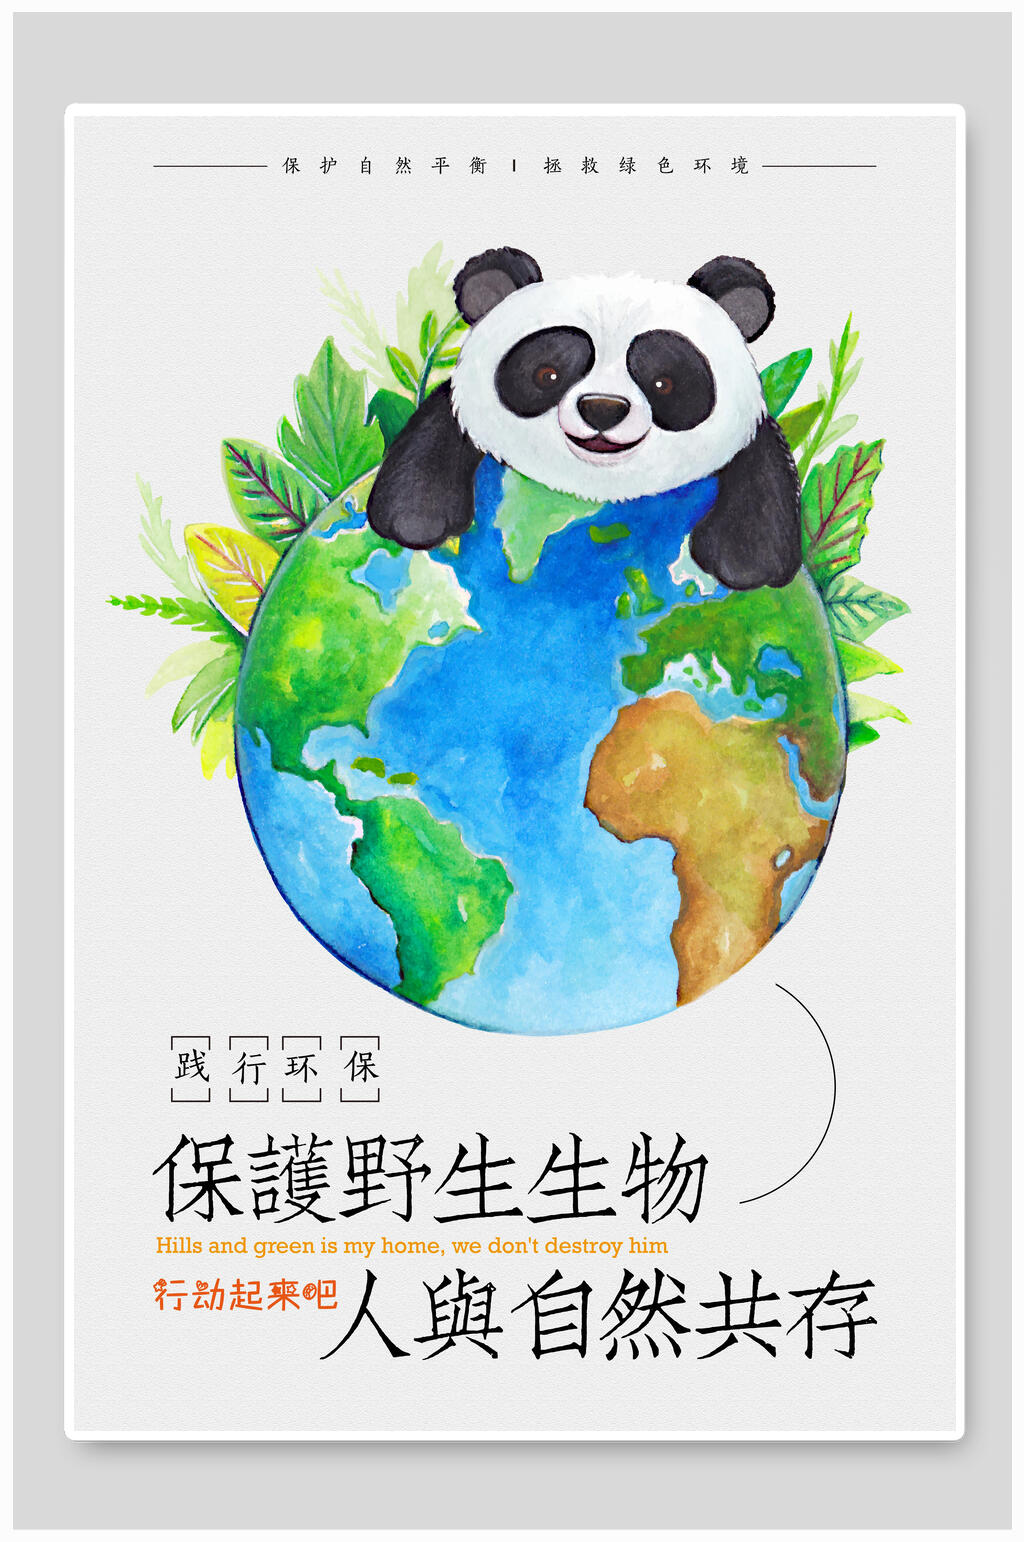 手绘大熊猫保护野生动物人与自然共存海报素材